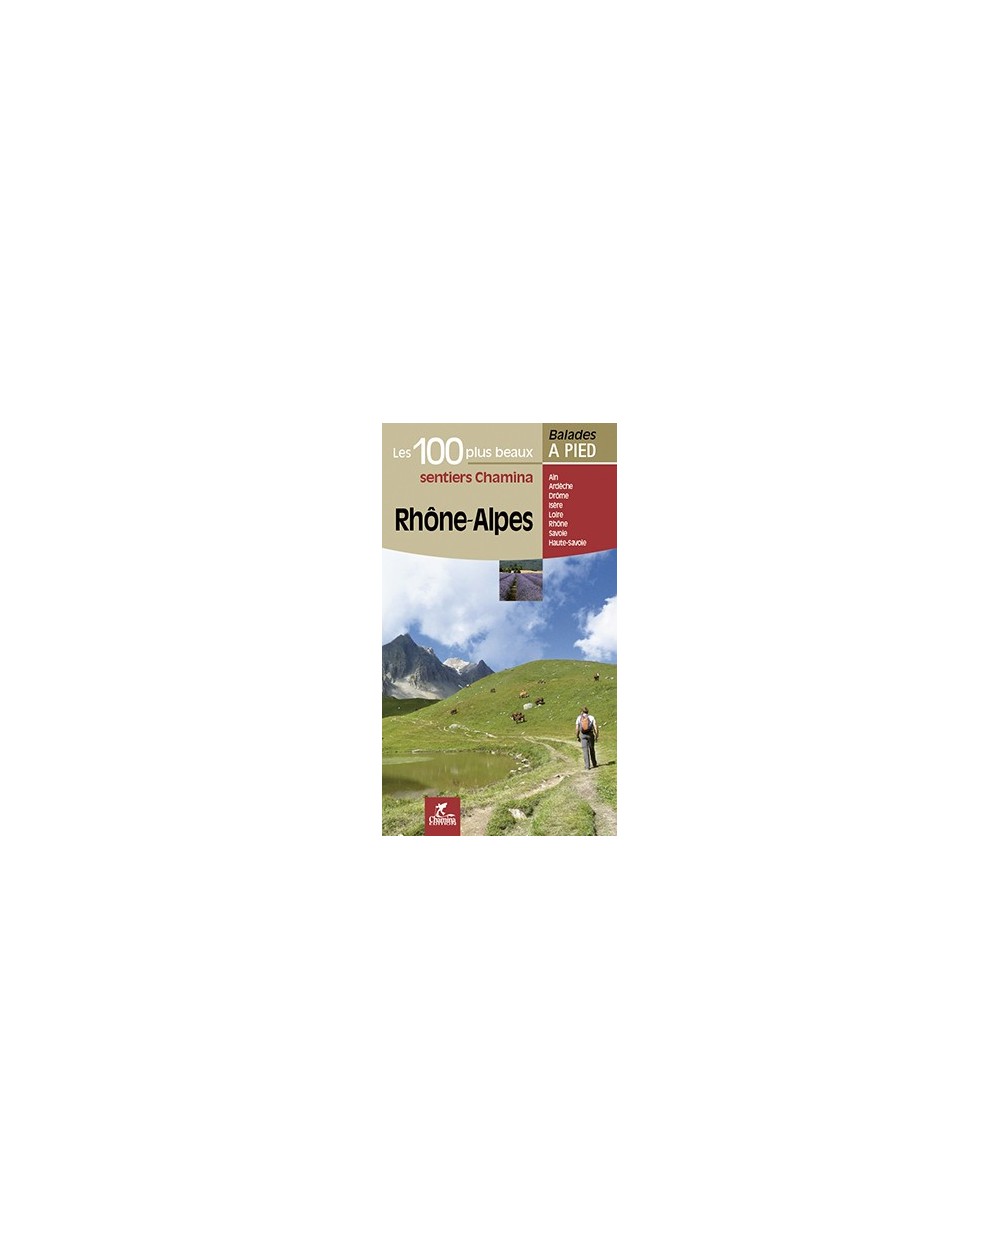 Rhone Alpes Les 100 Plus Beaux Sentiers Chamina Edition